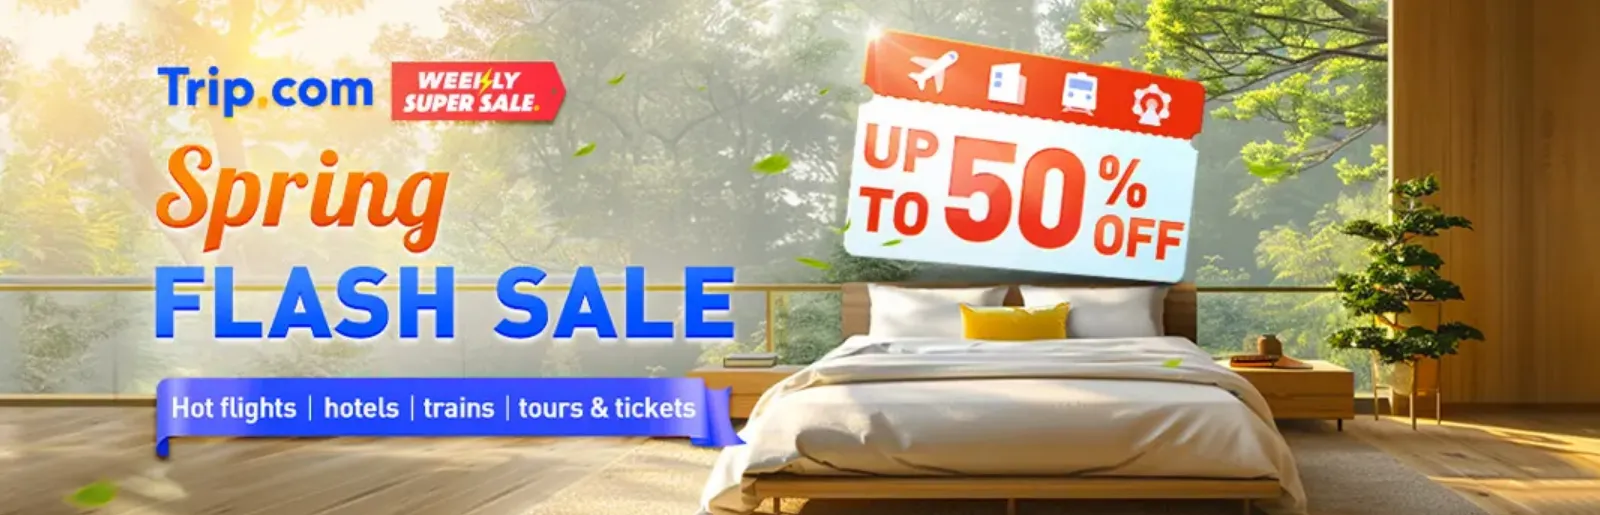 Trip.com Promo Code Hong Kong: Trip.com Spring Flash Sale, Up to 50% Off